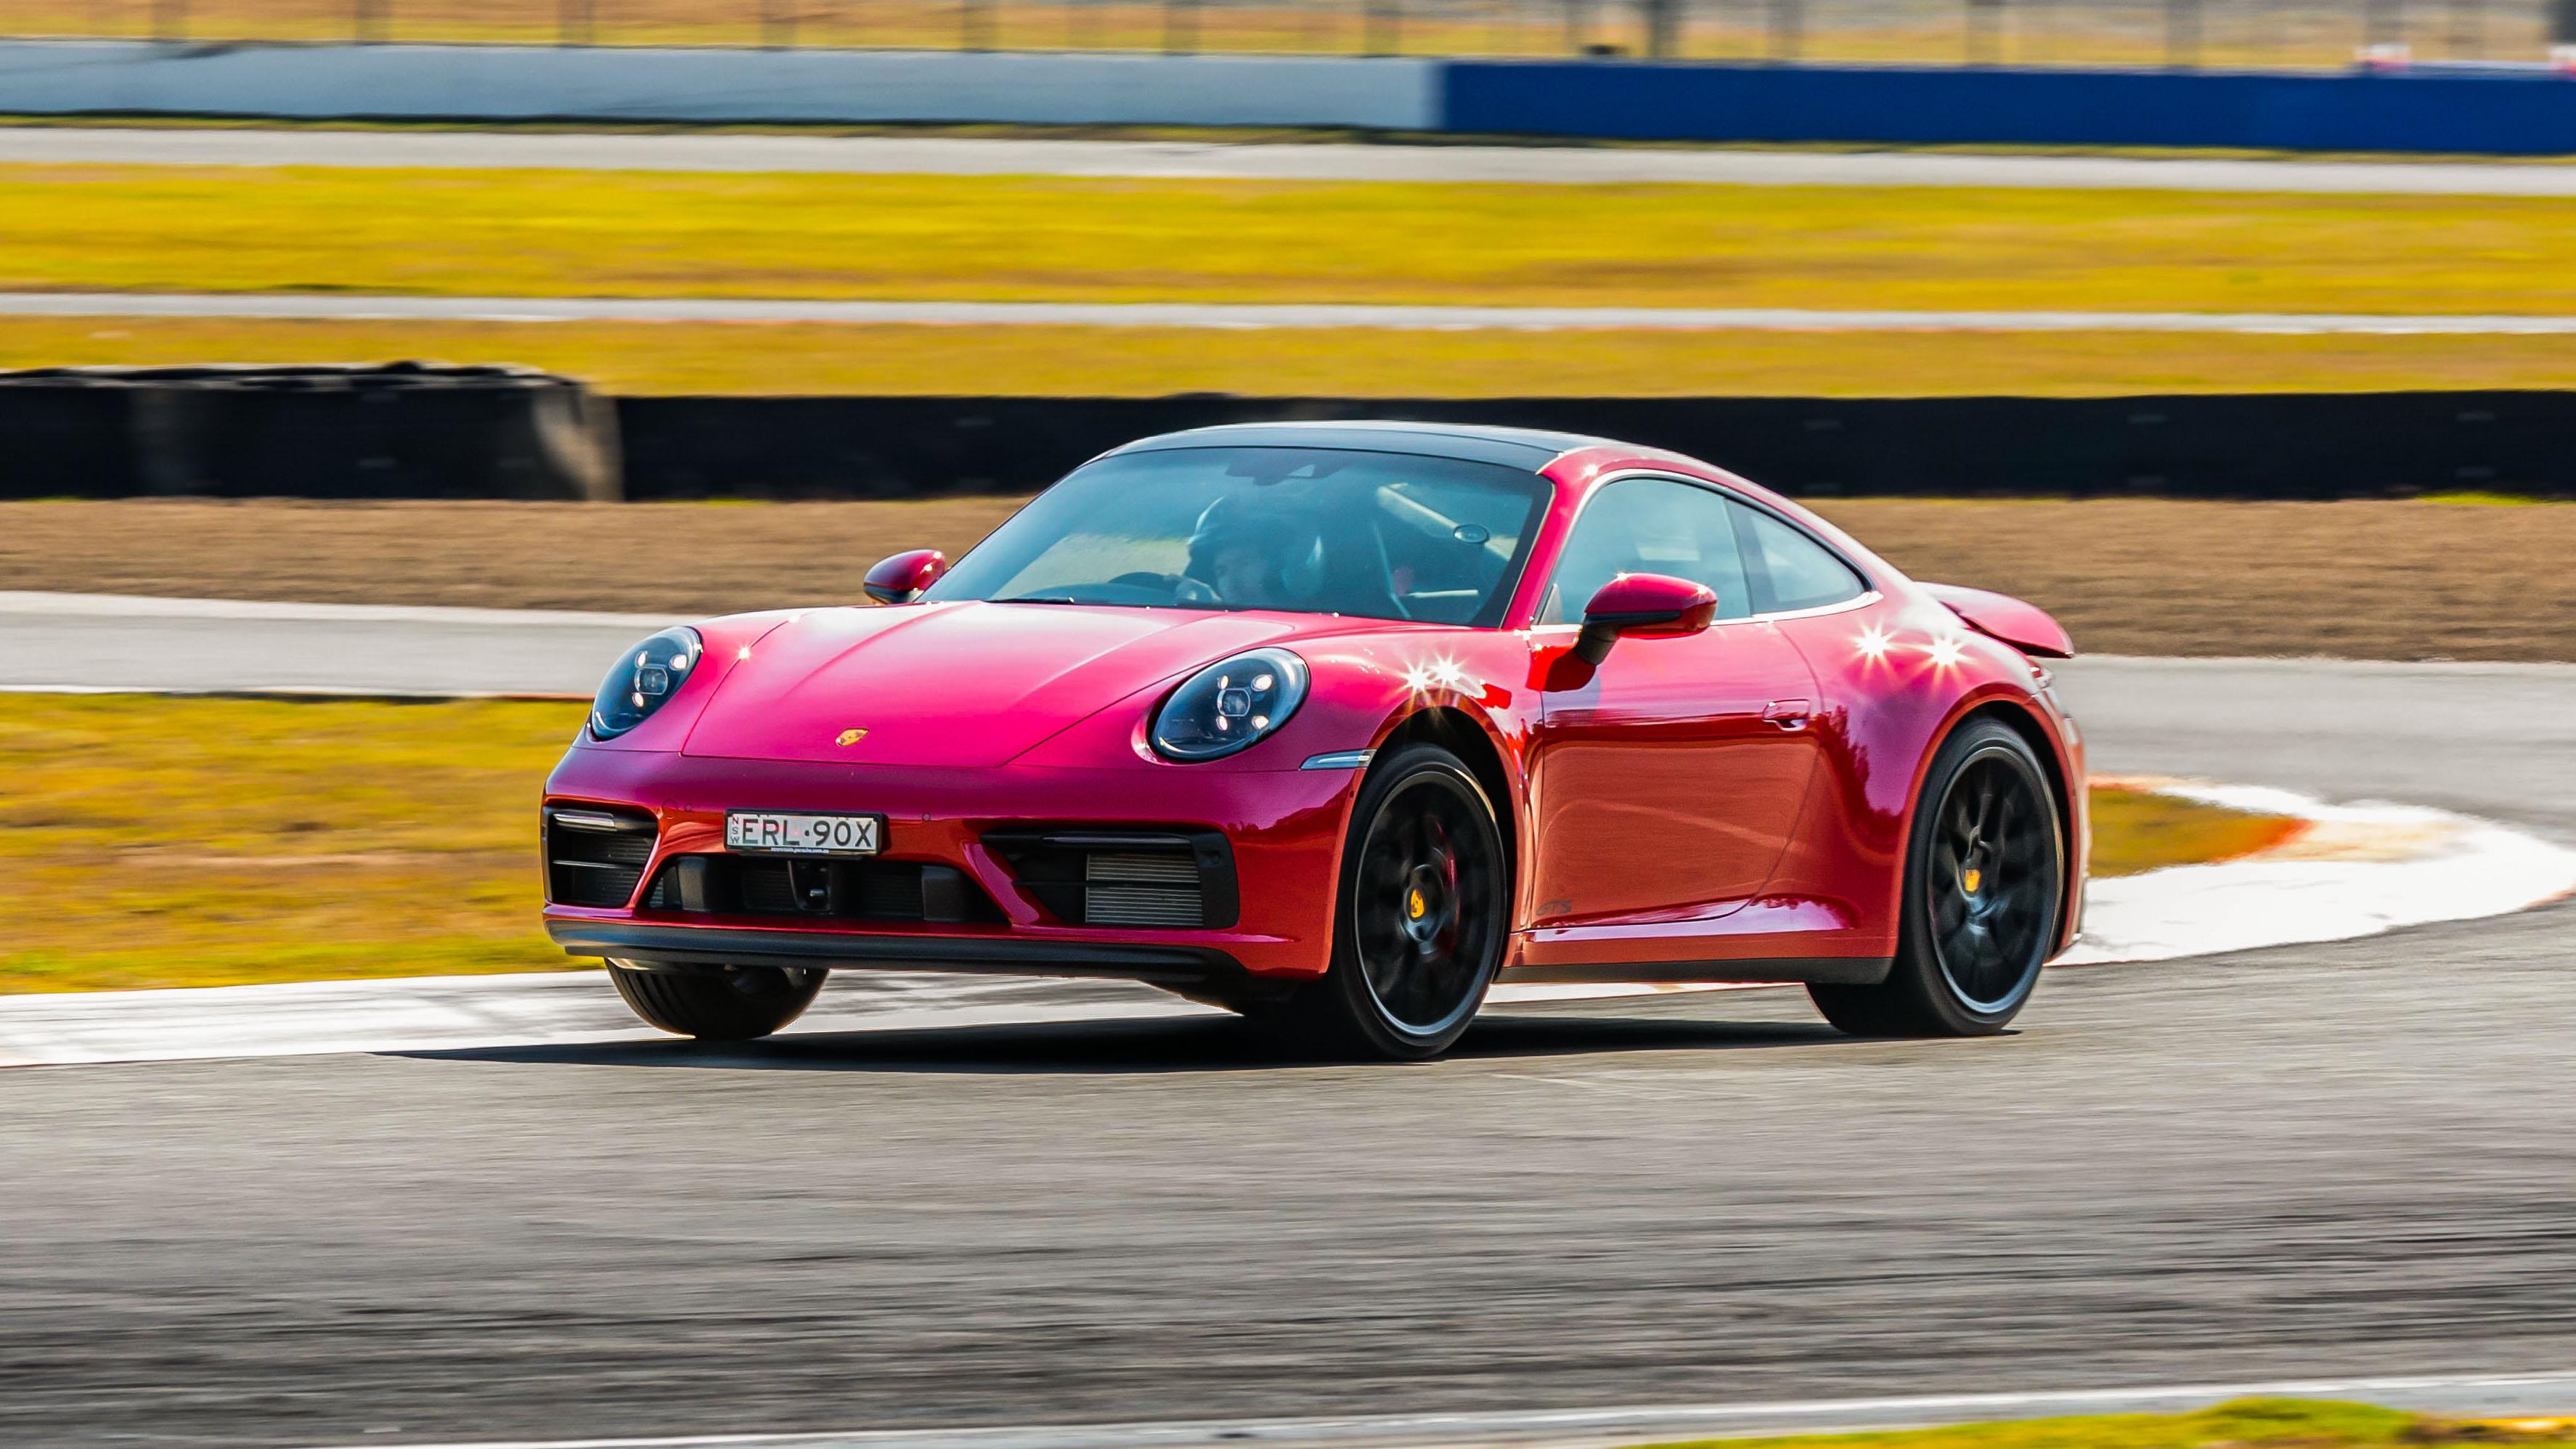 https://images.carexpert.com.au/app/uploads/2022/12/Porsche-911-Carrera-GTS-Queensland-Raceway-HERO-16x9-1.jpg